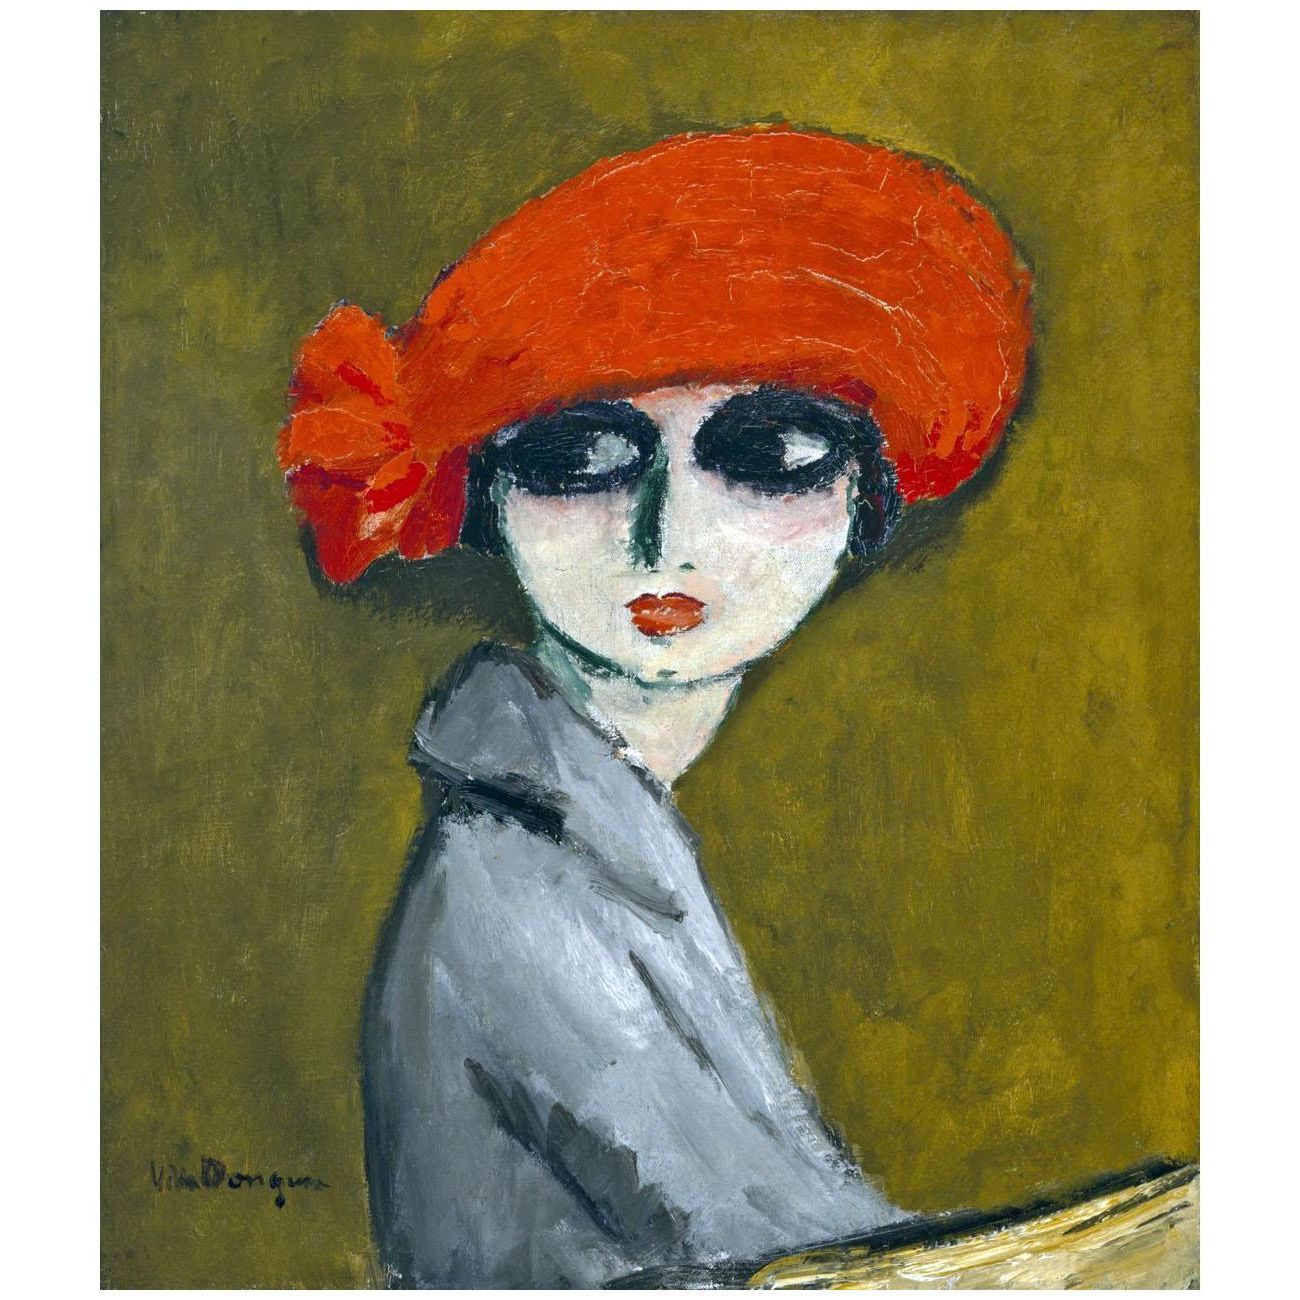 Kees van Dongen. Corn Poppy Girl. 1919. Museum of Fine Arts Houston